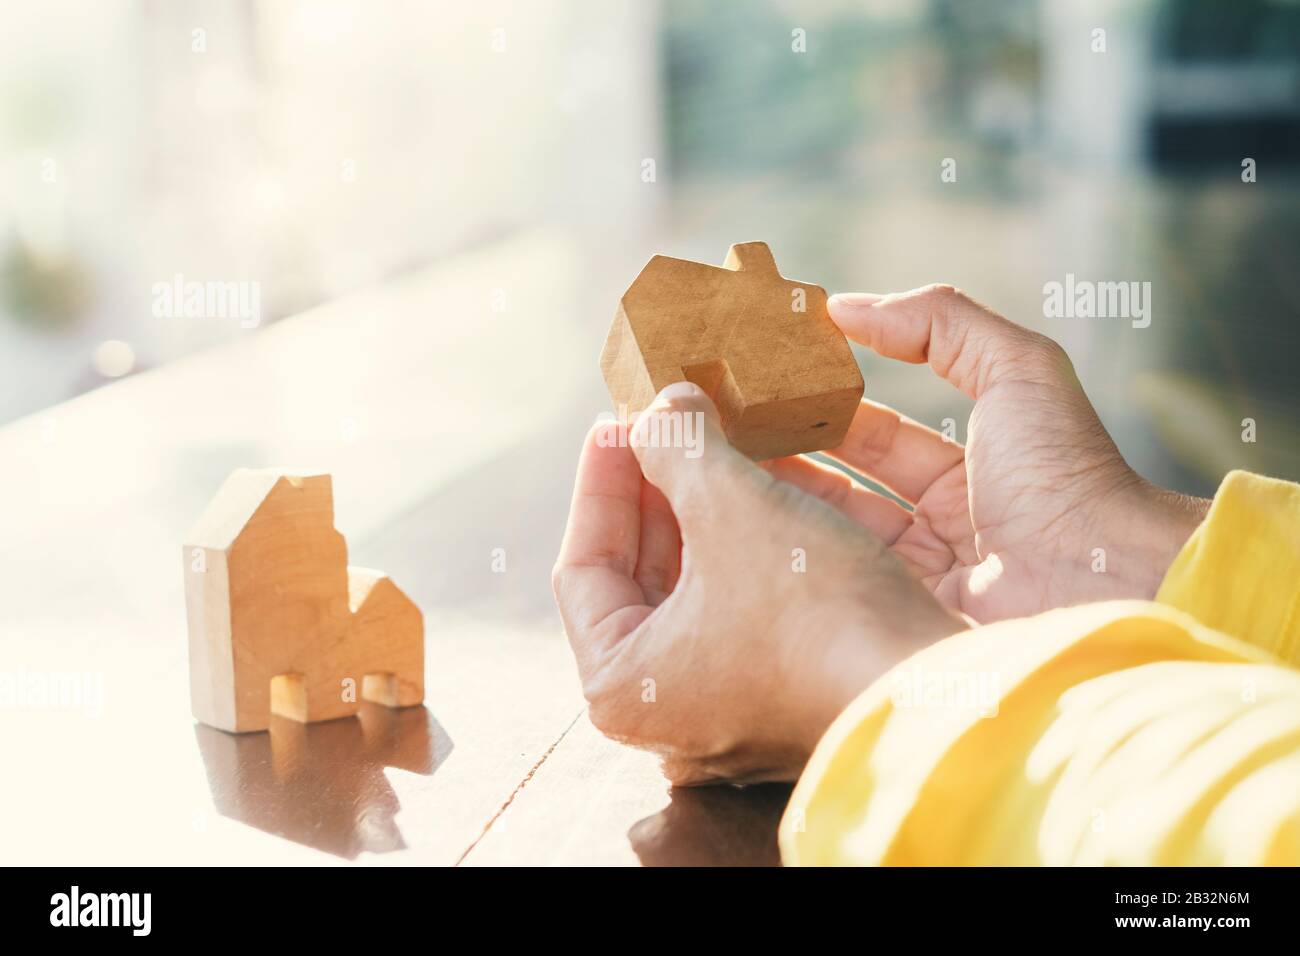 Les clients immobiliers choisissent les modèles de maison pour décider des décisions d'achat. L'acheteur et le vendeur offre un prêt pour construire une maison. Offre d'agent de vie familiale Banque D'Images